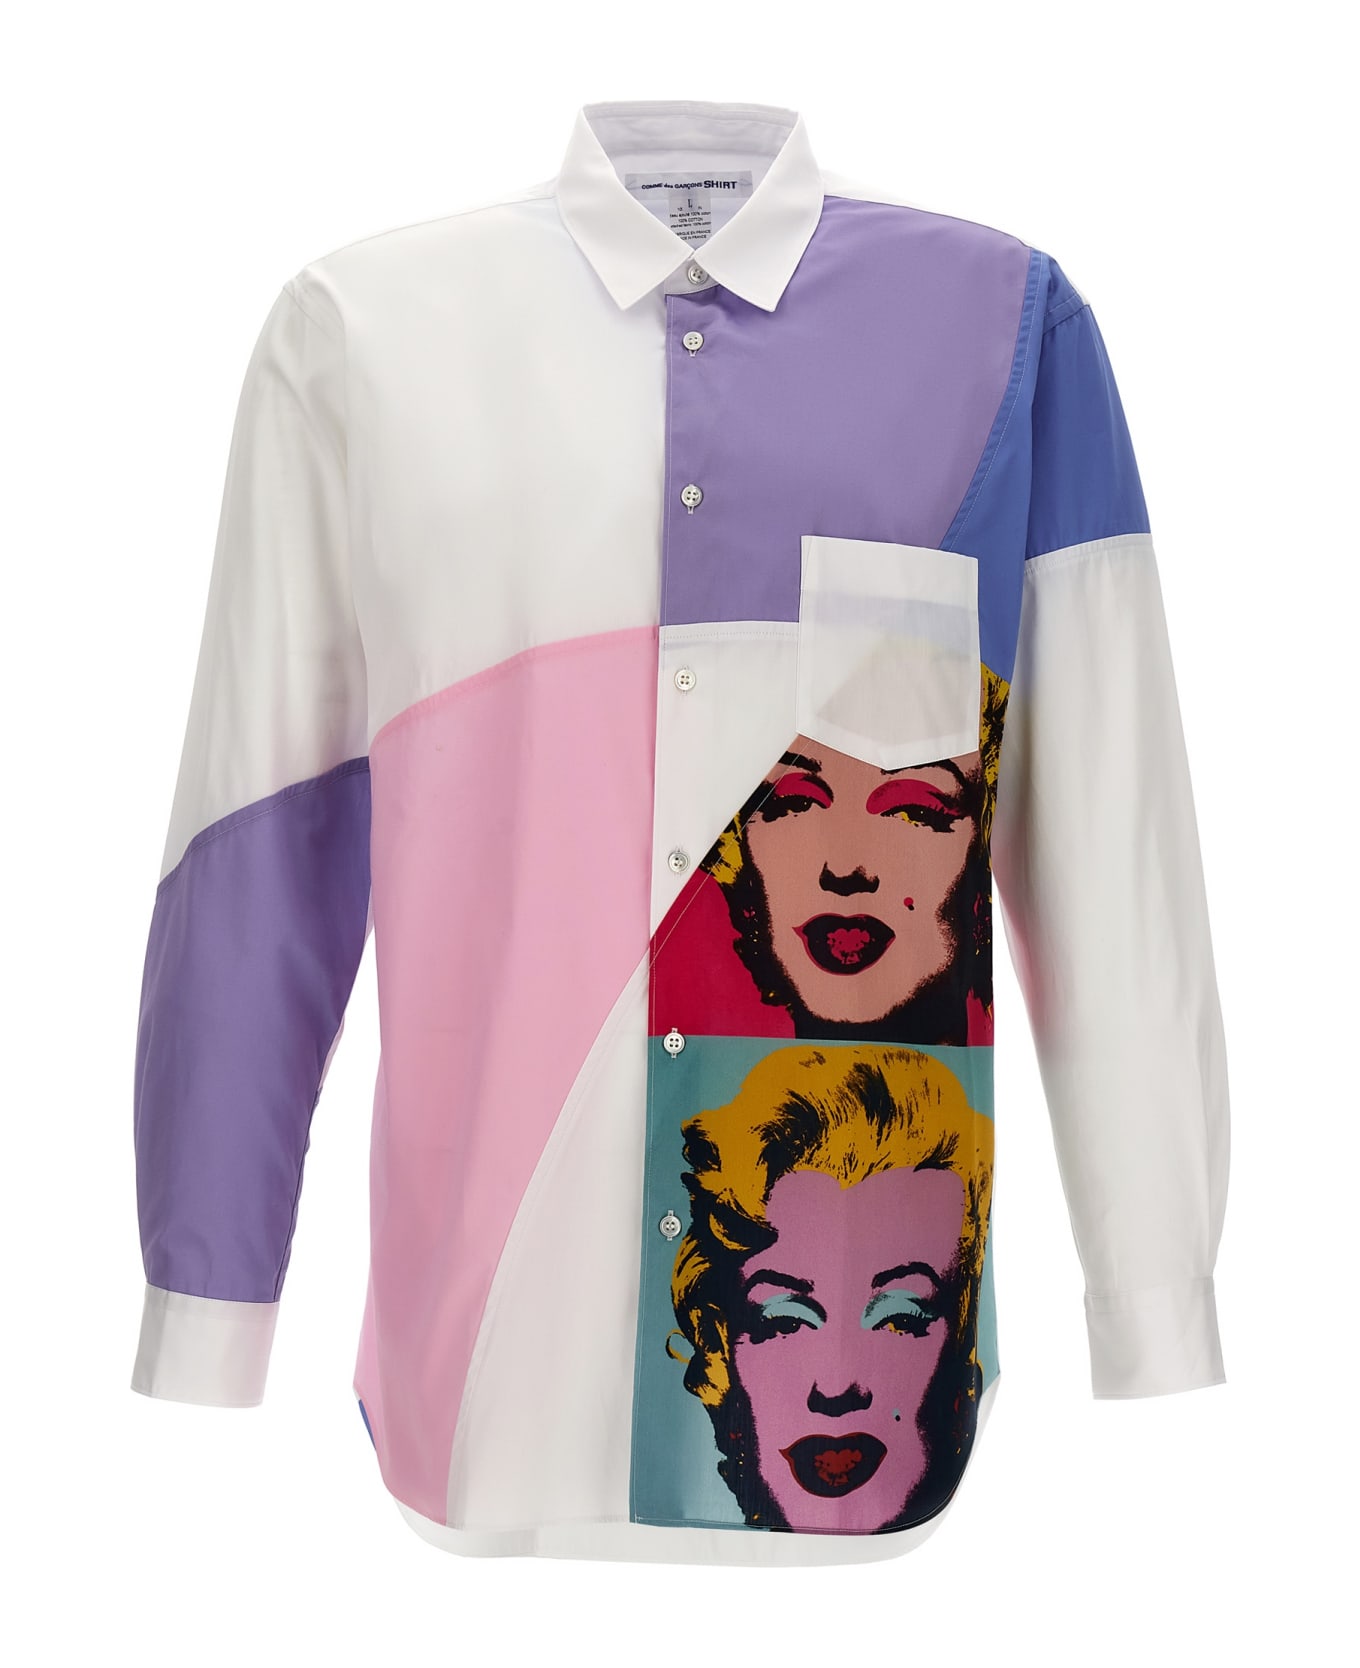 Comme des Garçons Shirt 'andy Warhol' Shirt - Multicolor